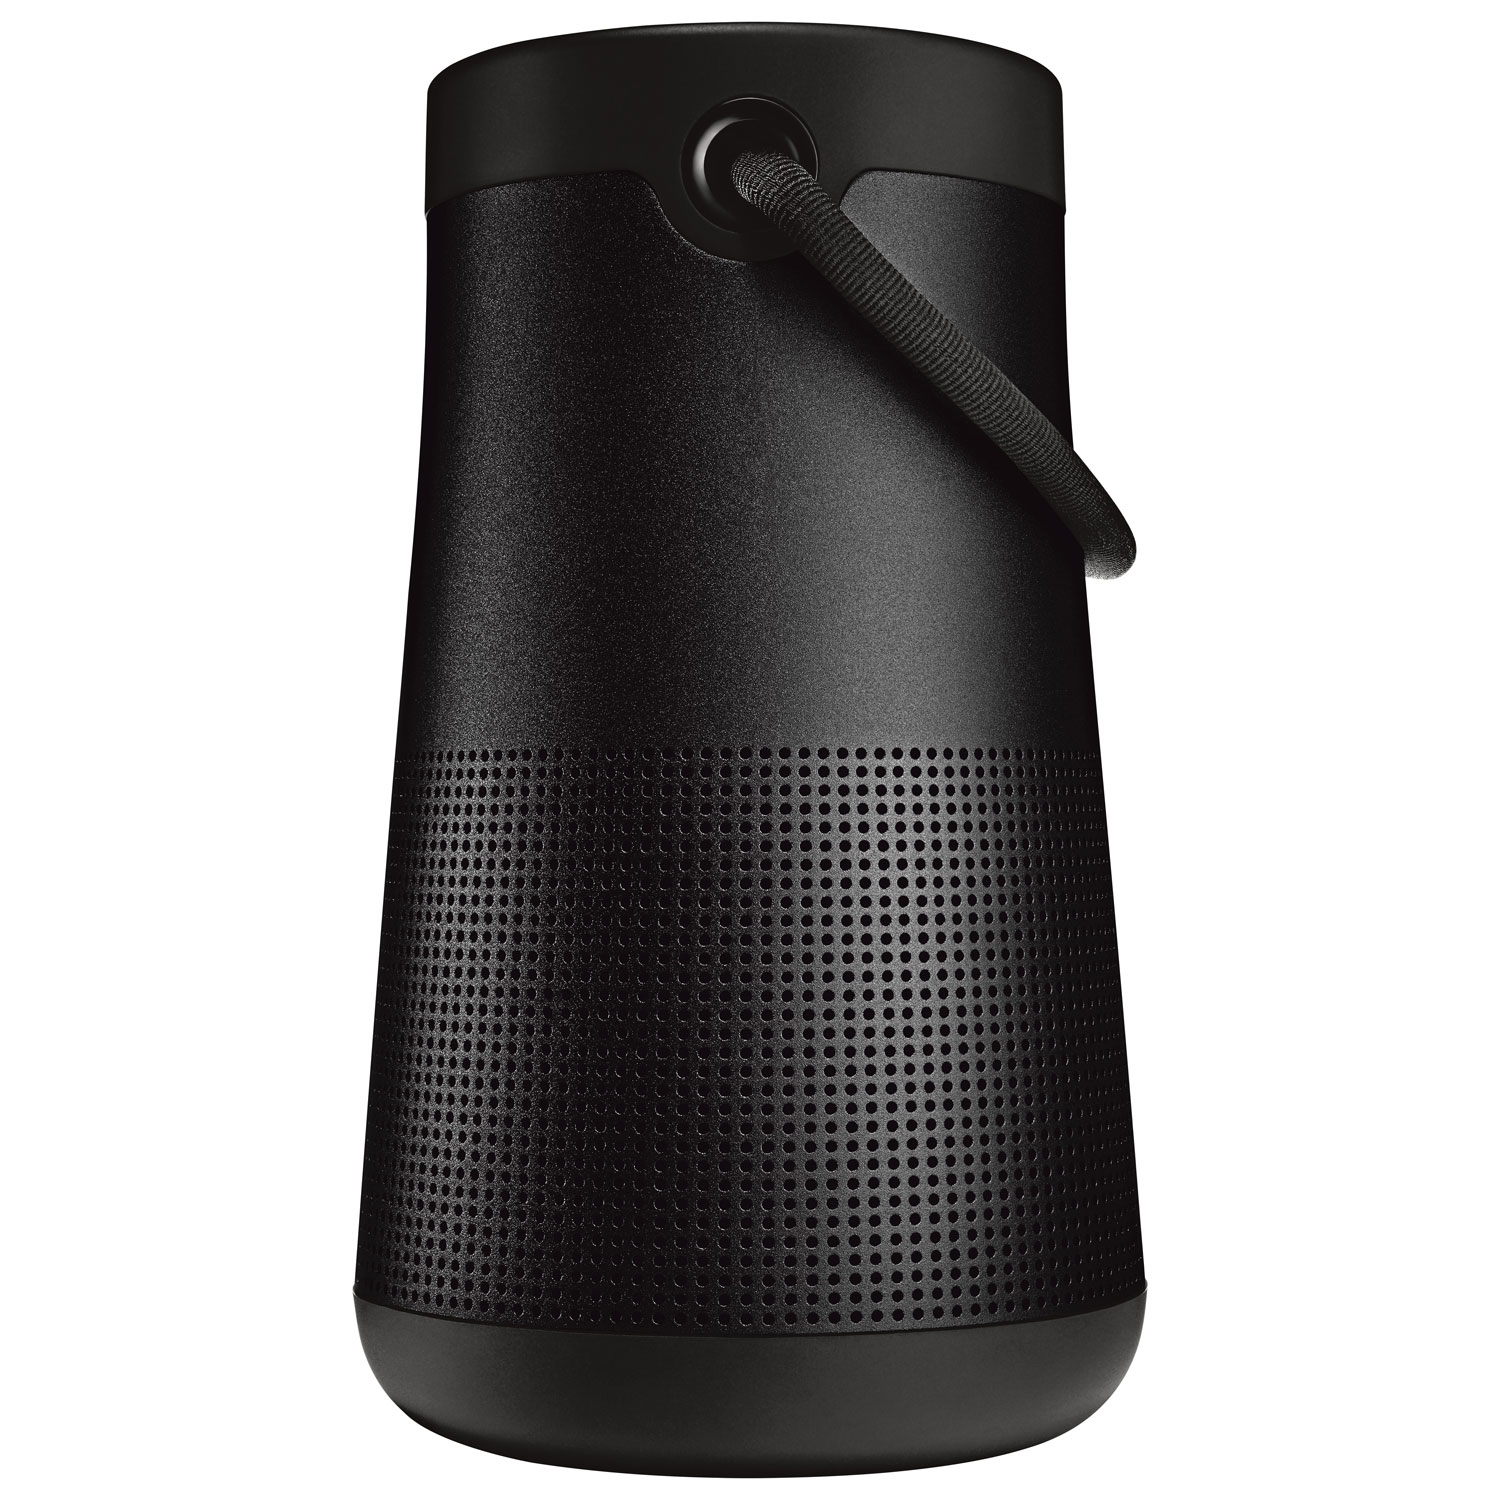 Bose SoundLink Revolve+ II Splashproof Bluetooth Wireless Speaker